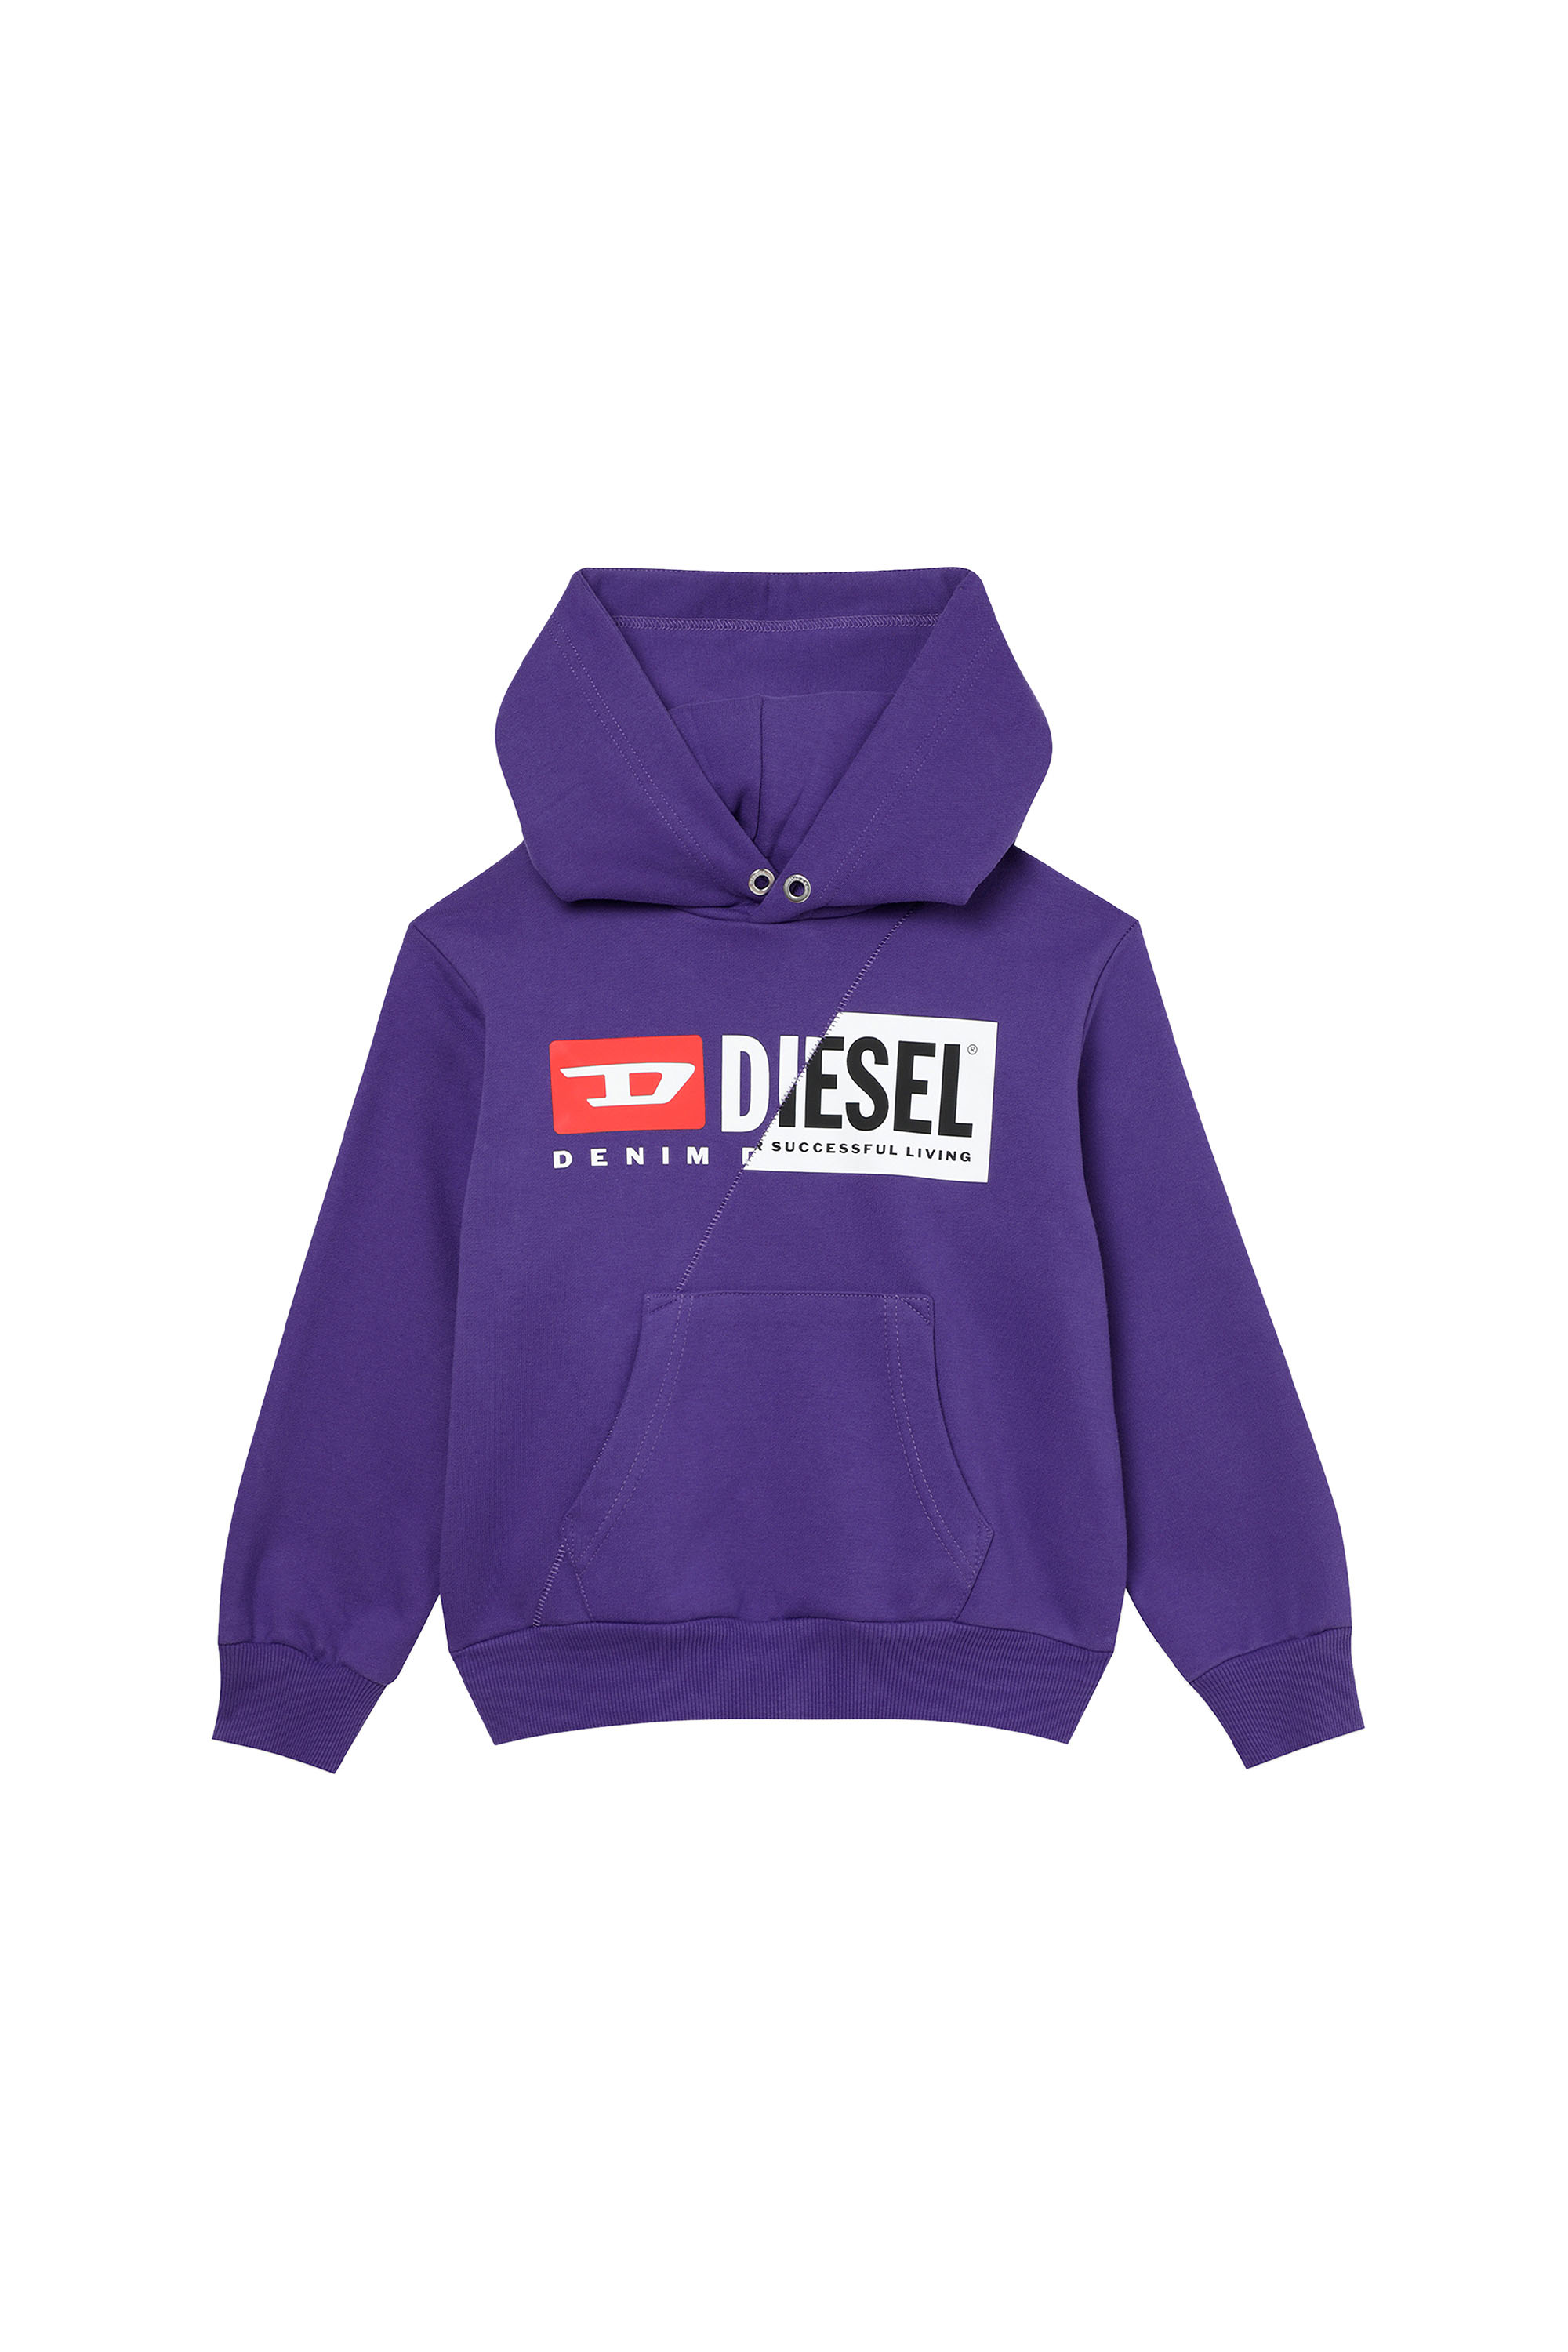 Diesel Kids Sale: Up to 50% Off + Extra 20% Off | Diesel